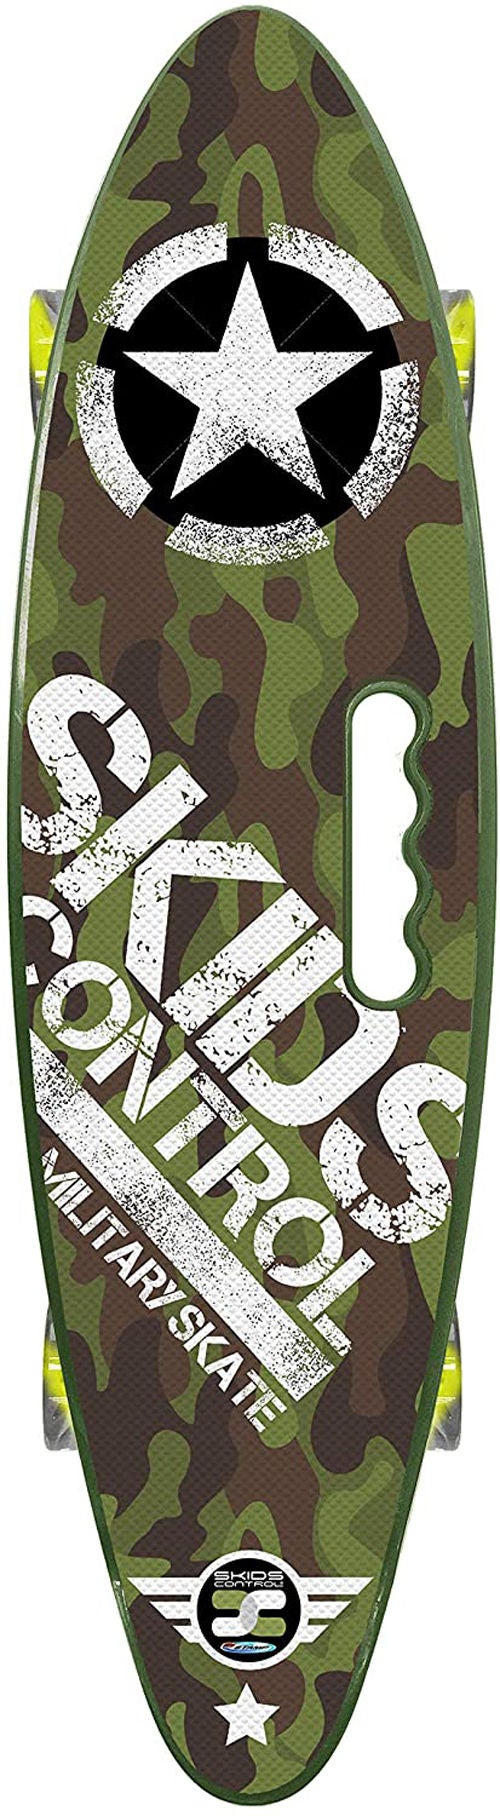 Stamp Skateboard Skids Control, Military von Stamp